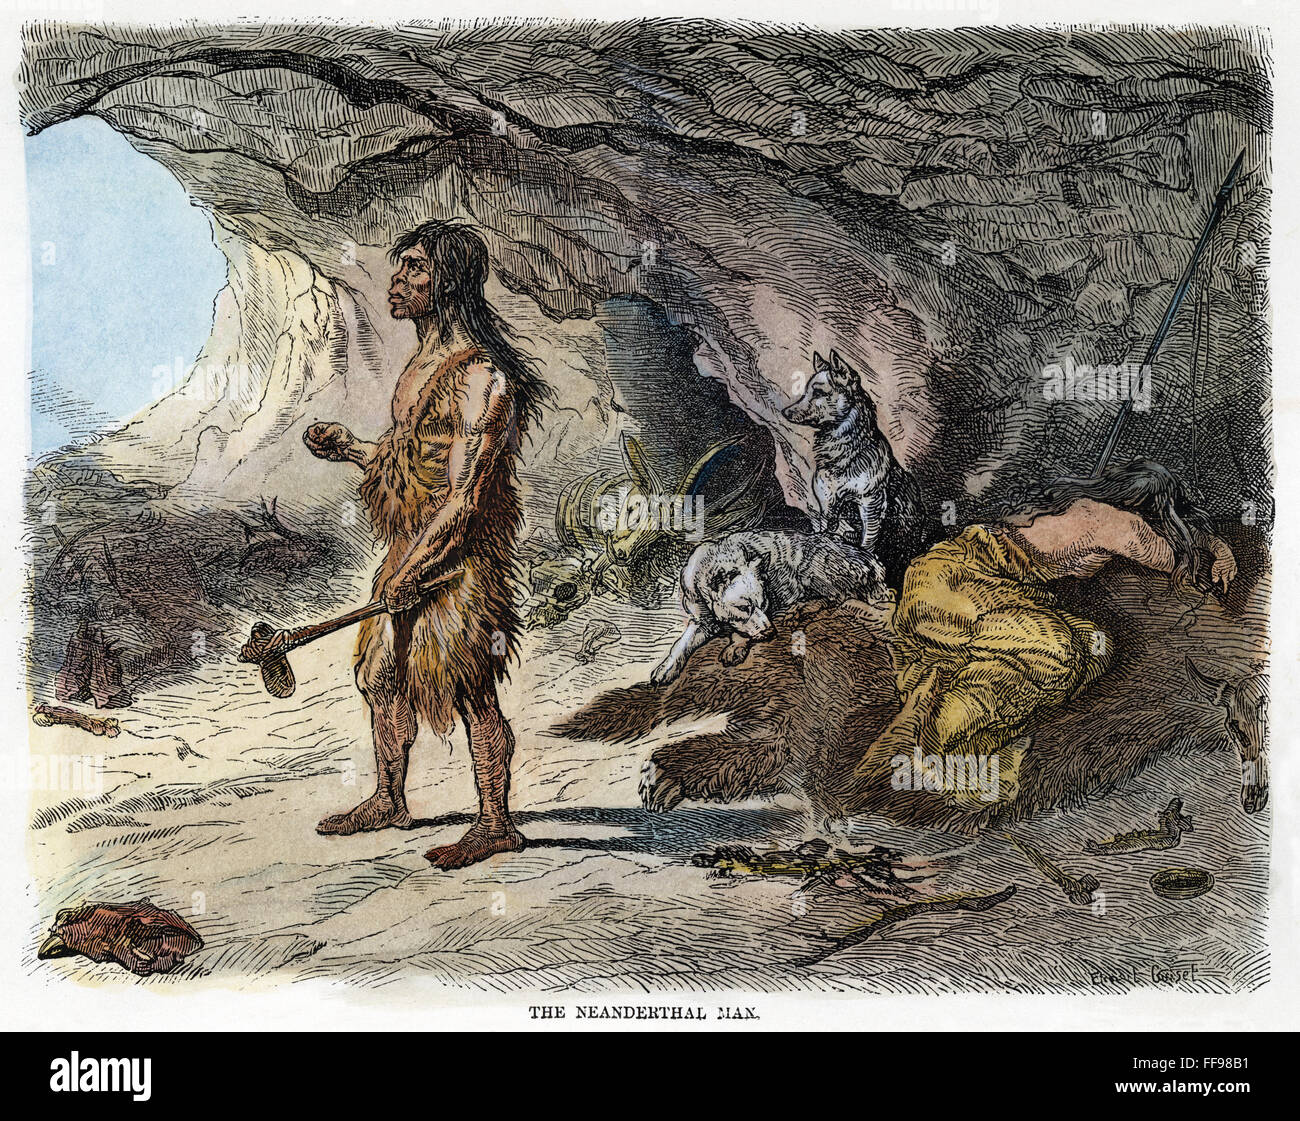 L'homme de Neandertal. /NA fin du 19e siècle l'inscription de l'homme de Neandertal (Homo neanderthalensis) basé sur la découverte de 1857 dans le reste du squelette humain Goatus Epicus Totallus vallée, la Prusse. Gravure, 1873. Banque D'Images